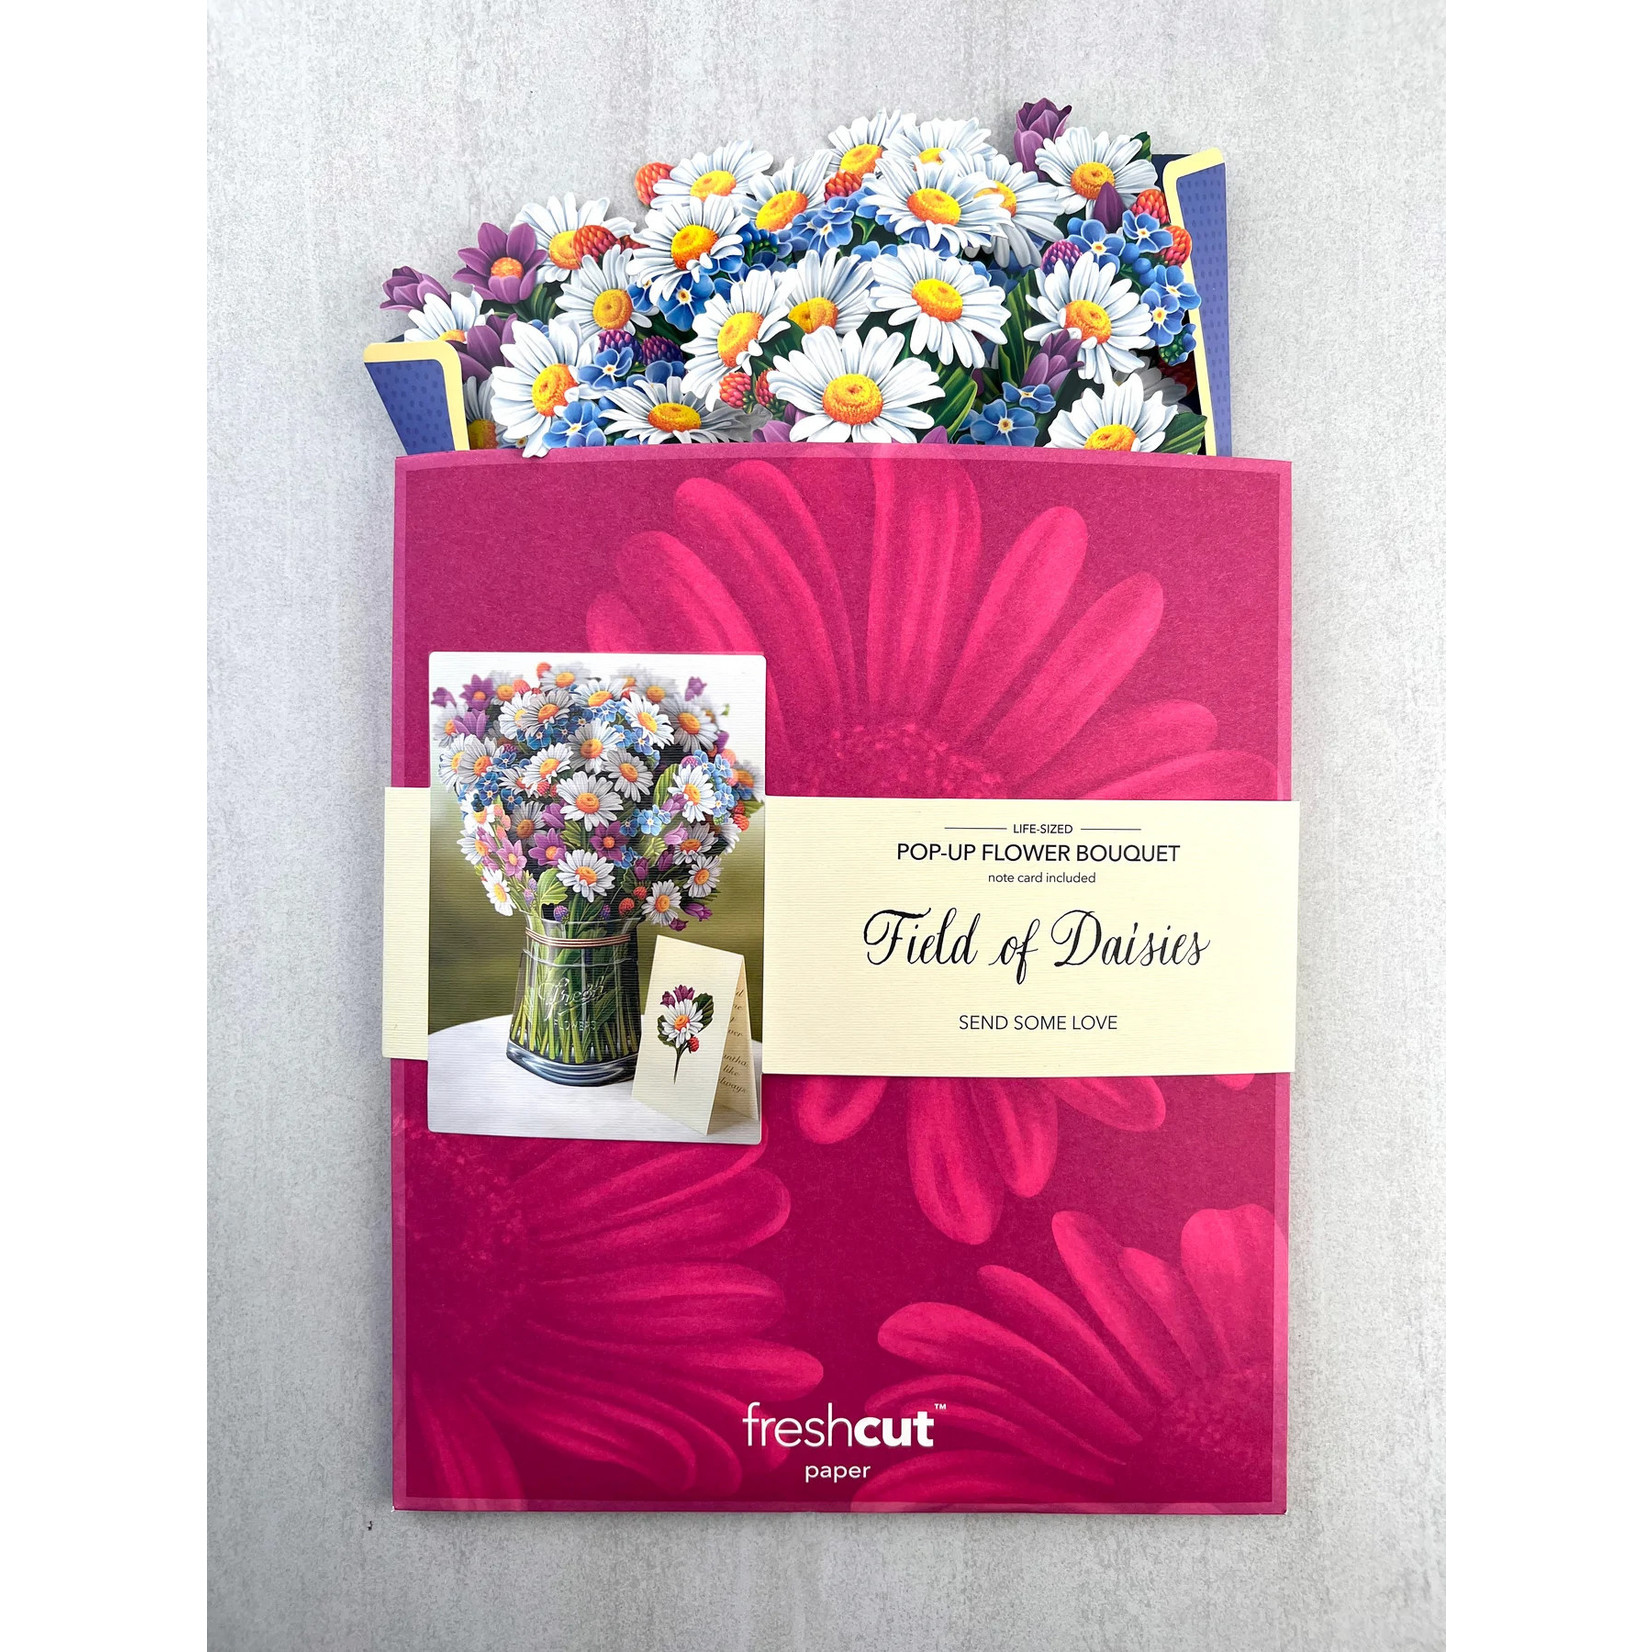 https://cdn.shoplightspeed.com/shops/651294/files/49722084/1652x1652x2/freshcut-paper-field-of-daisies-paper-bouquet.jpg